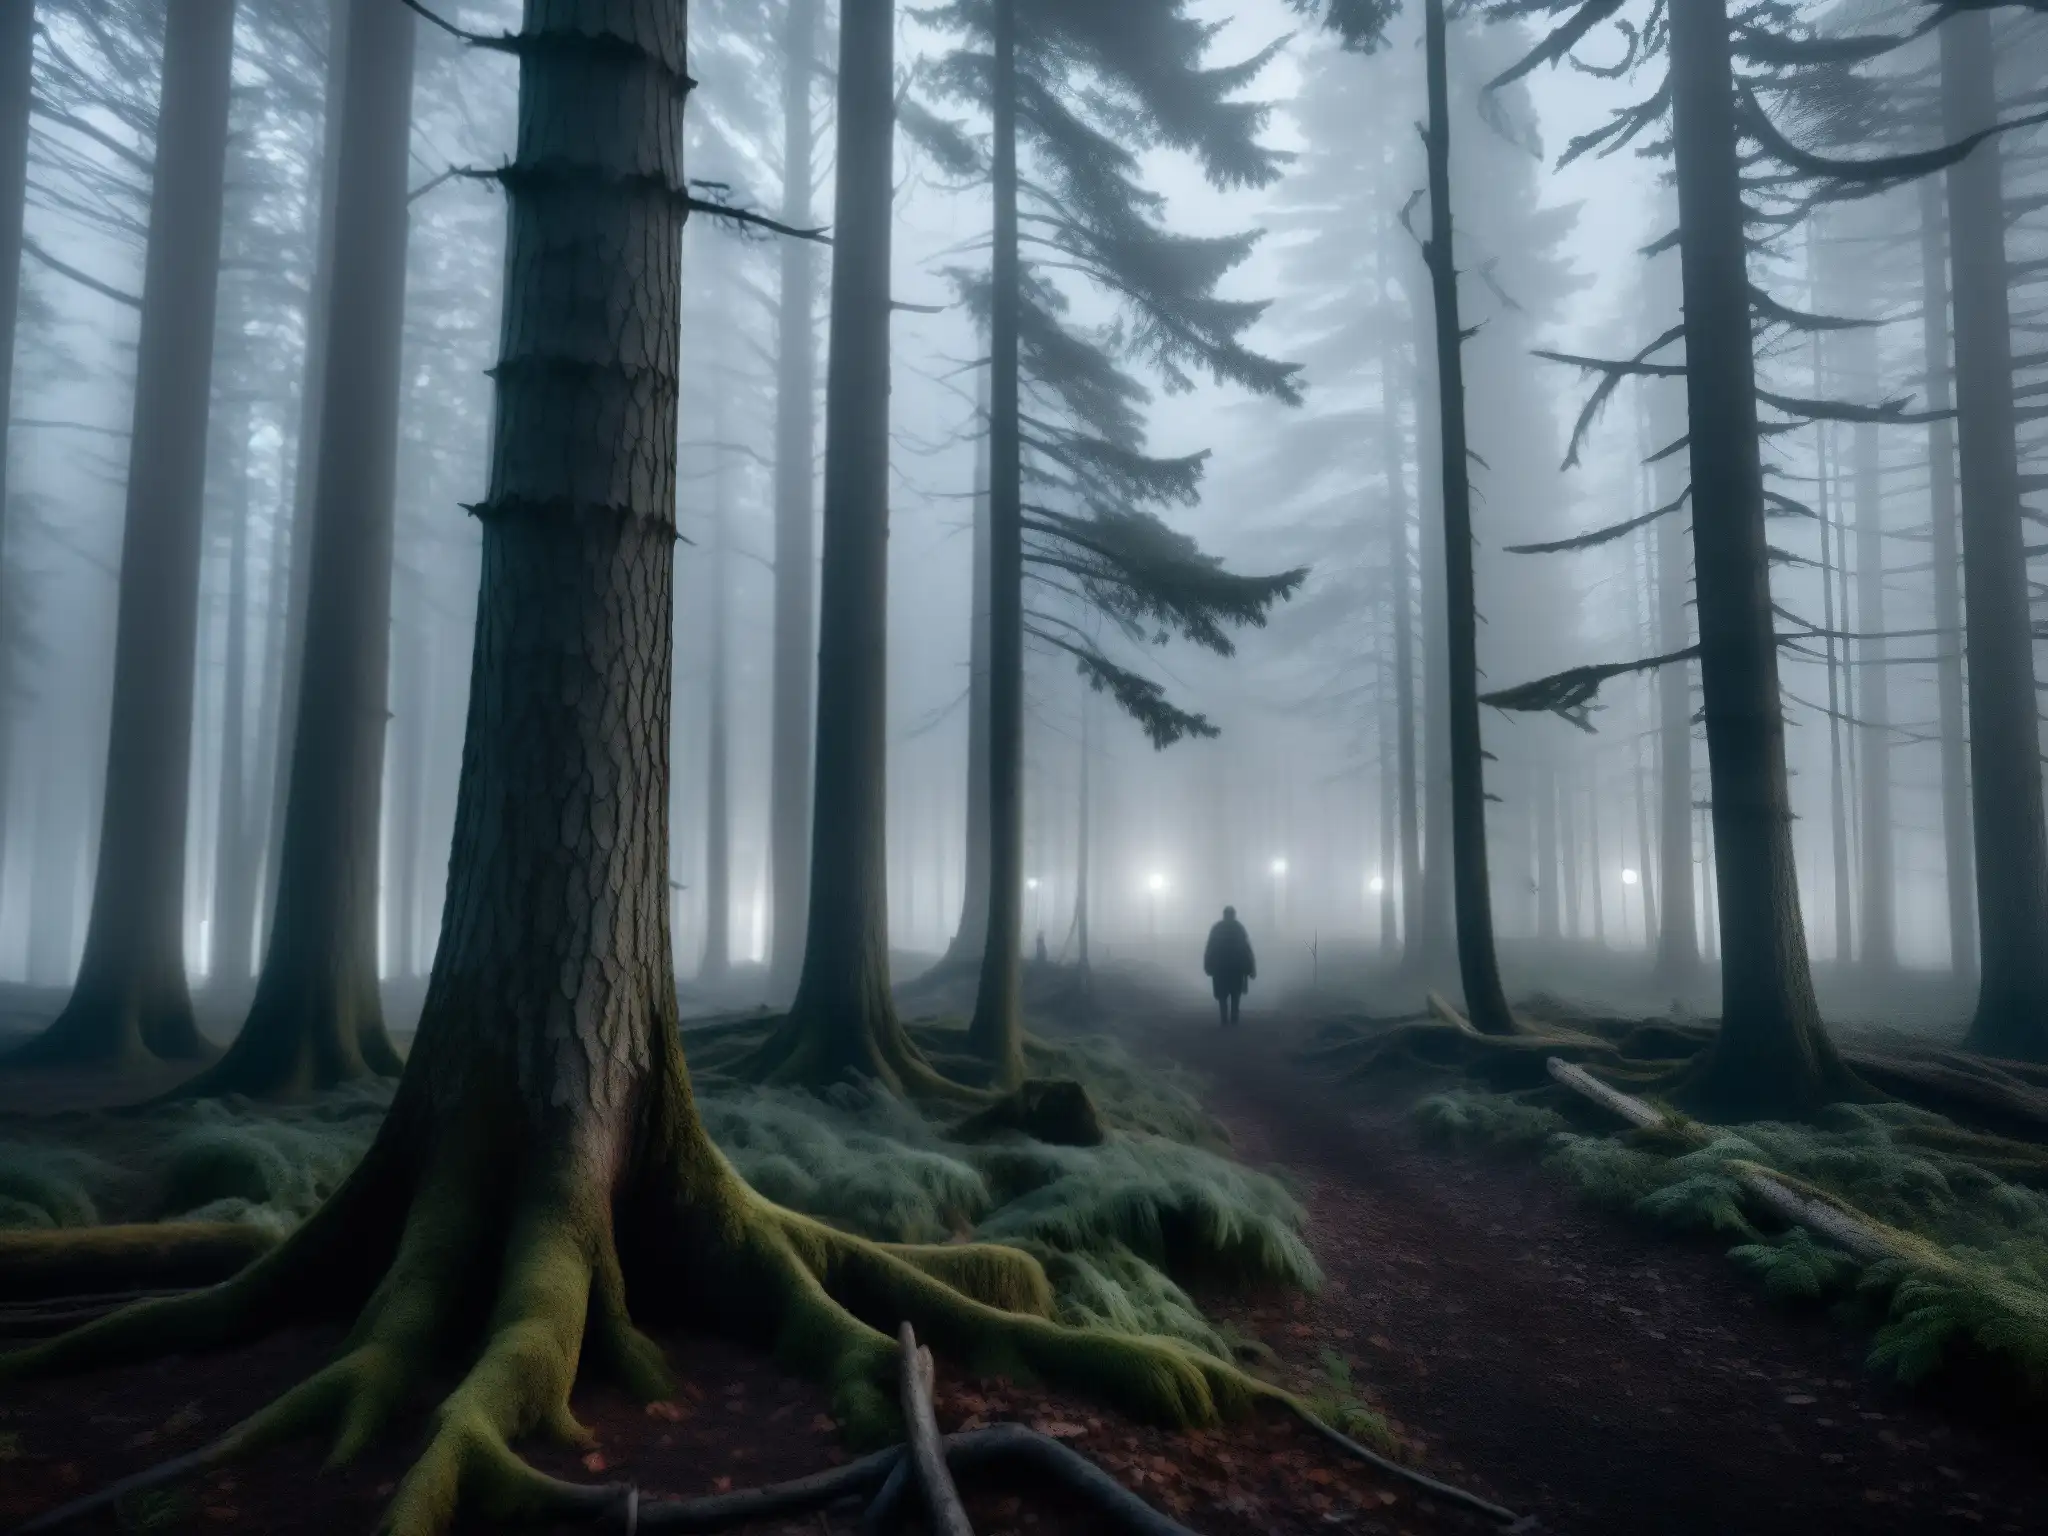 Un bosque oscuro y tenebroso de noche, con niebla y ramas retorcidas